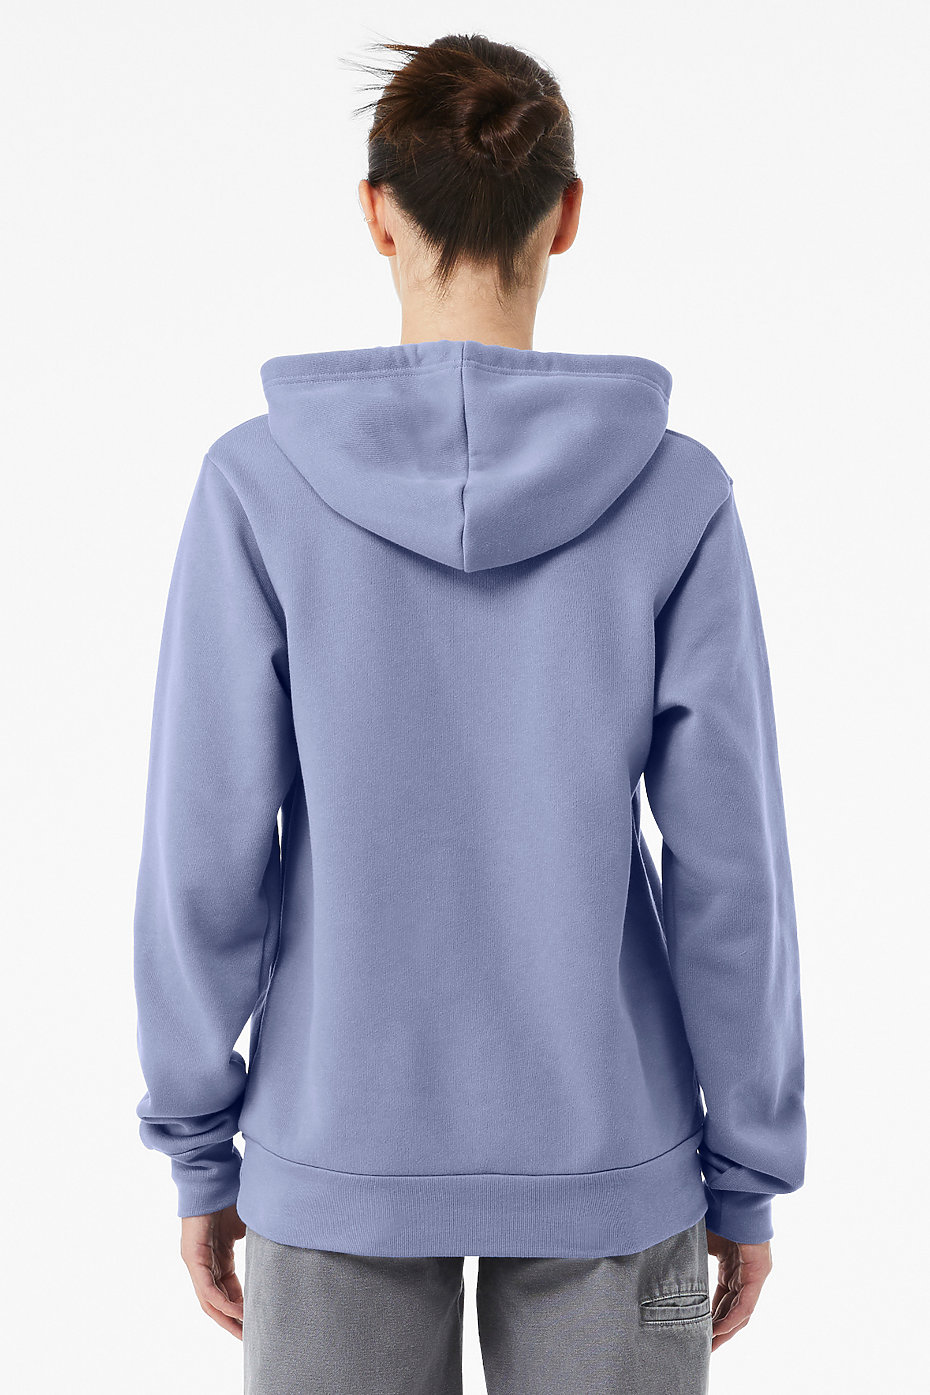 Sweatshirt : Hoodie 100% Cotton Premium Blend Fleece, S-4XL